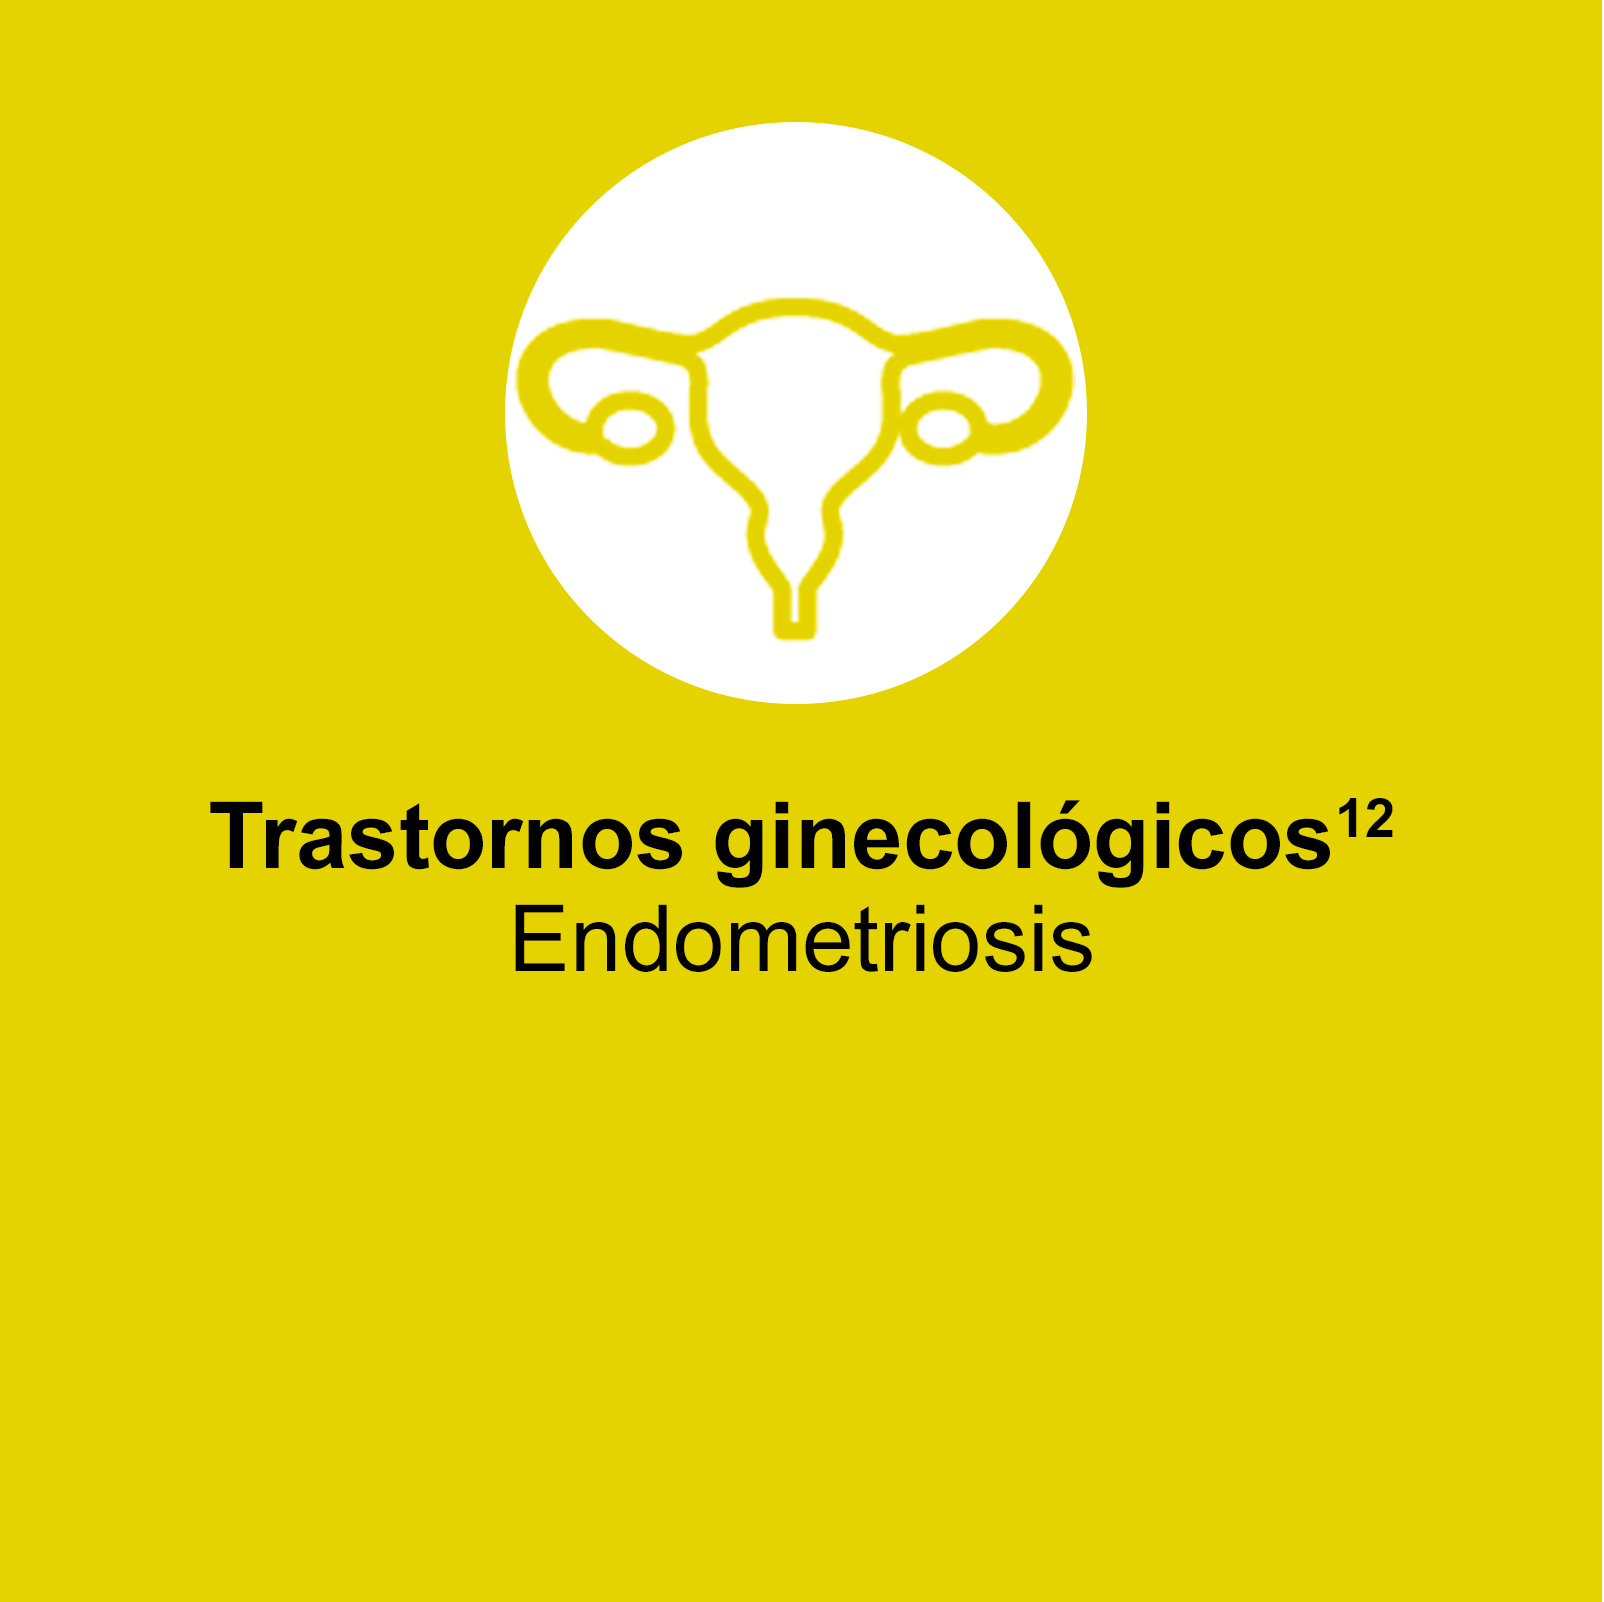 La porfiria aguda hepática puede presentar síntomas semejantes a los de trastornos ginecológicos como la endometriosis